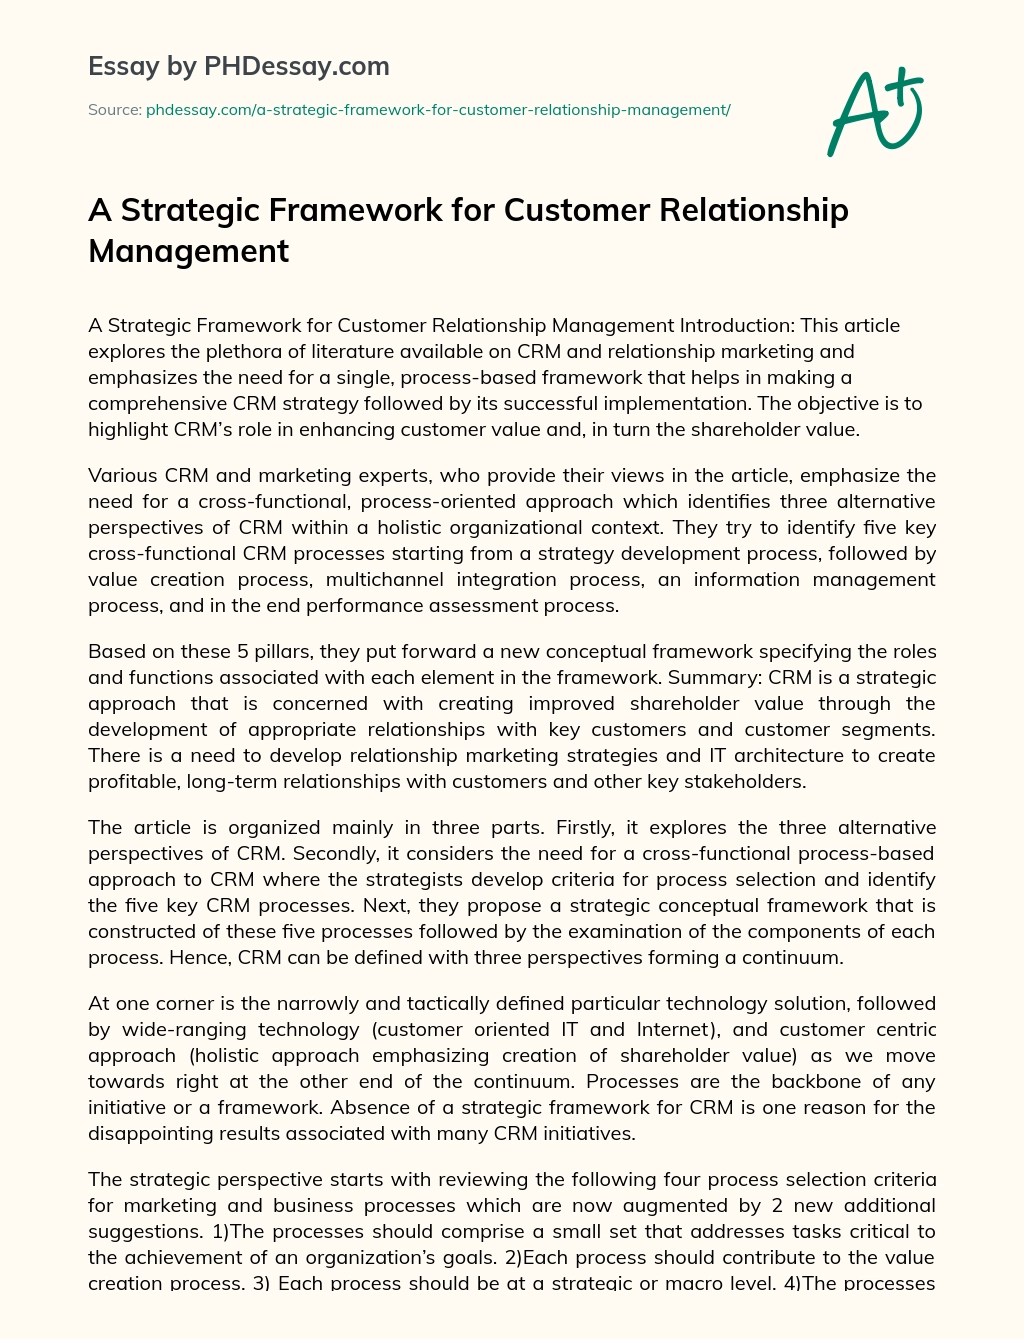 A Strategic Framework for Customer Relationship Management essay